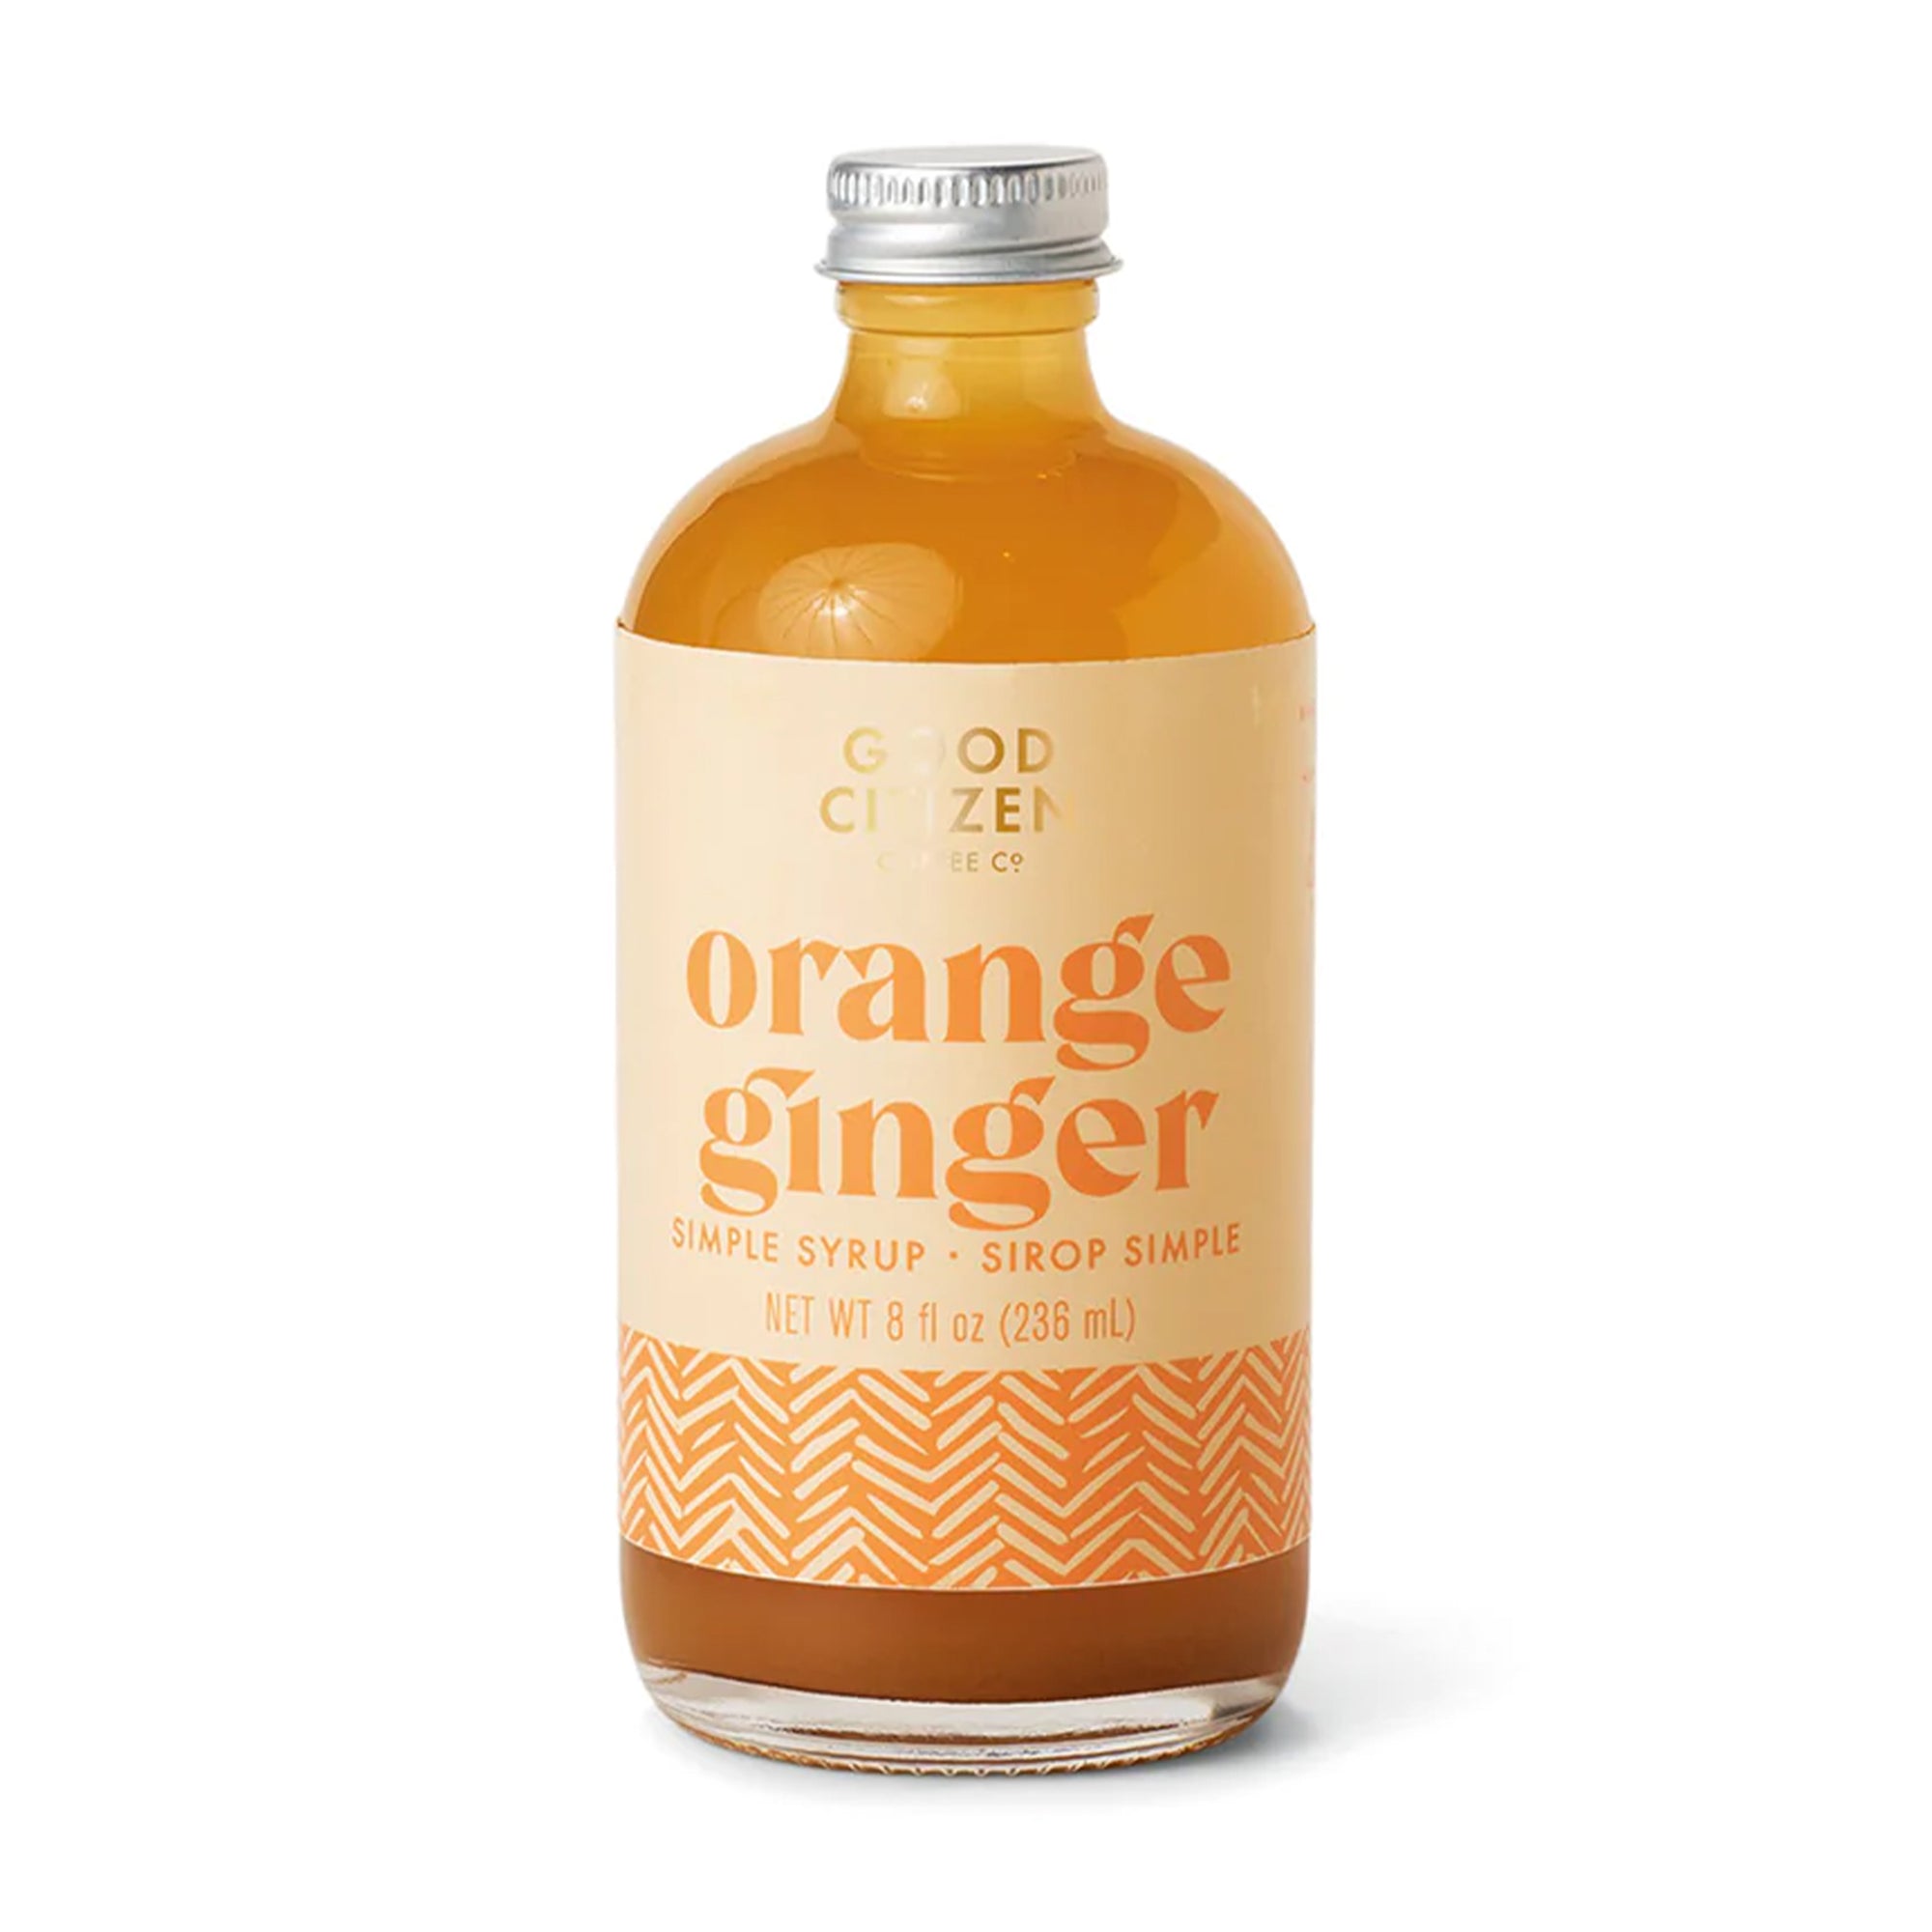 Orange Ginger Simple Syrup